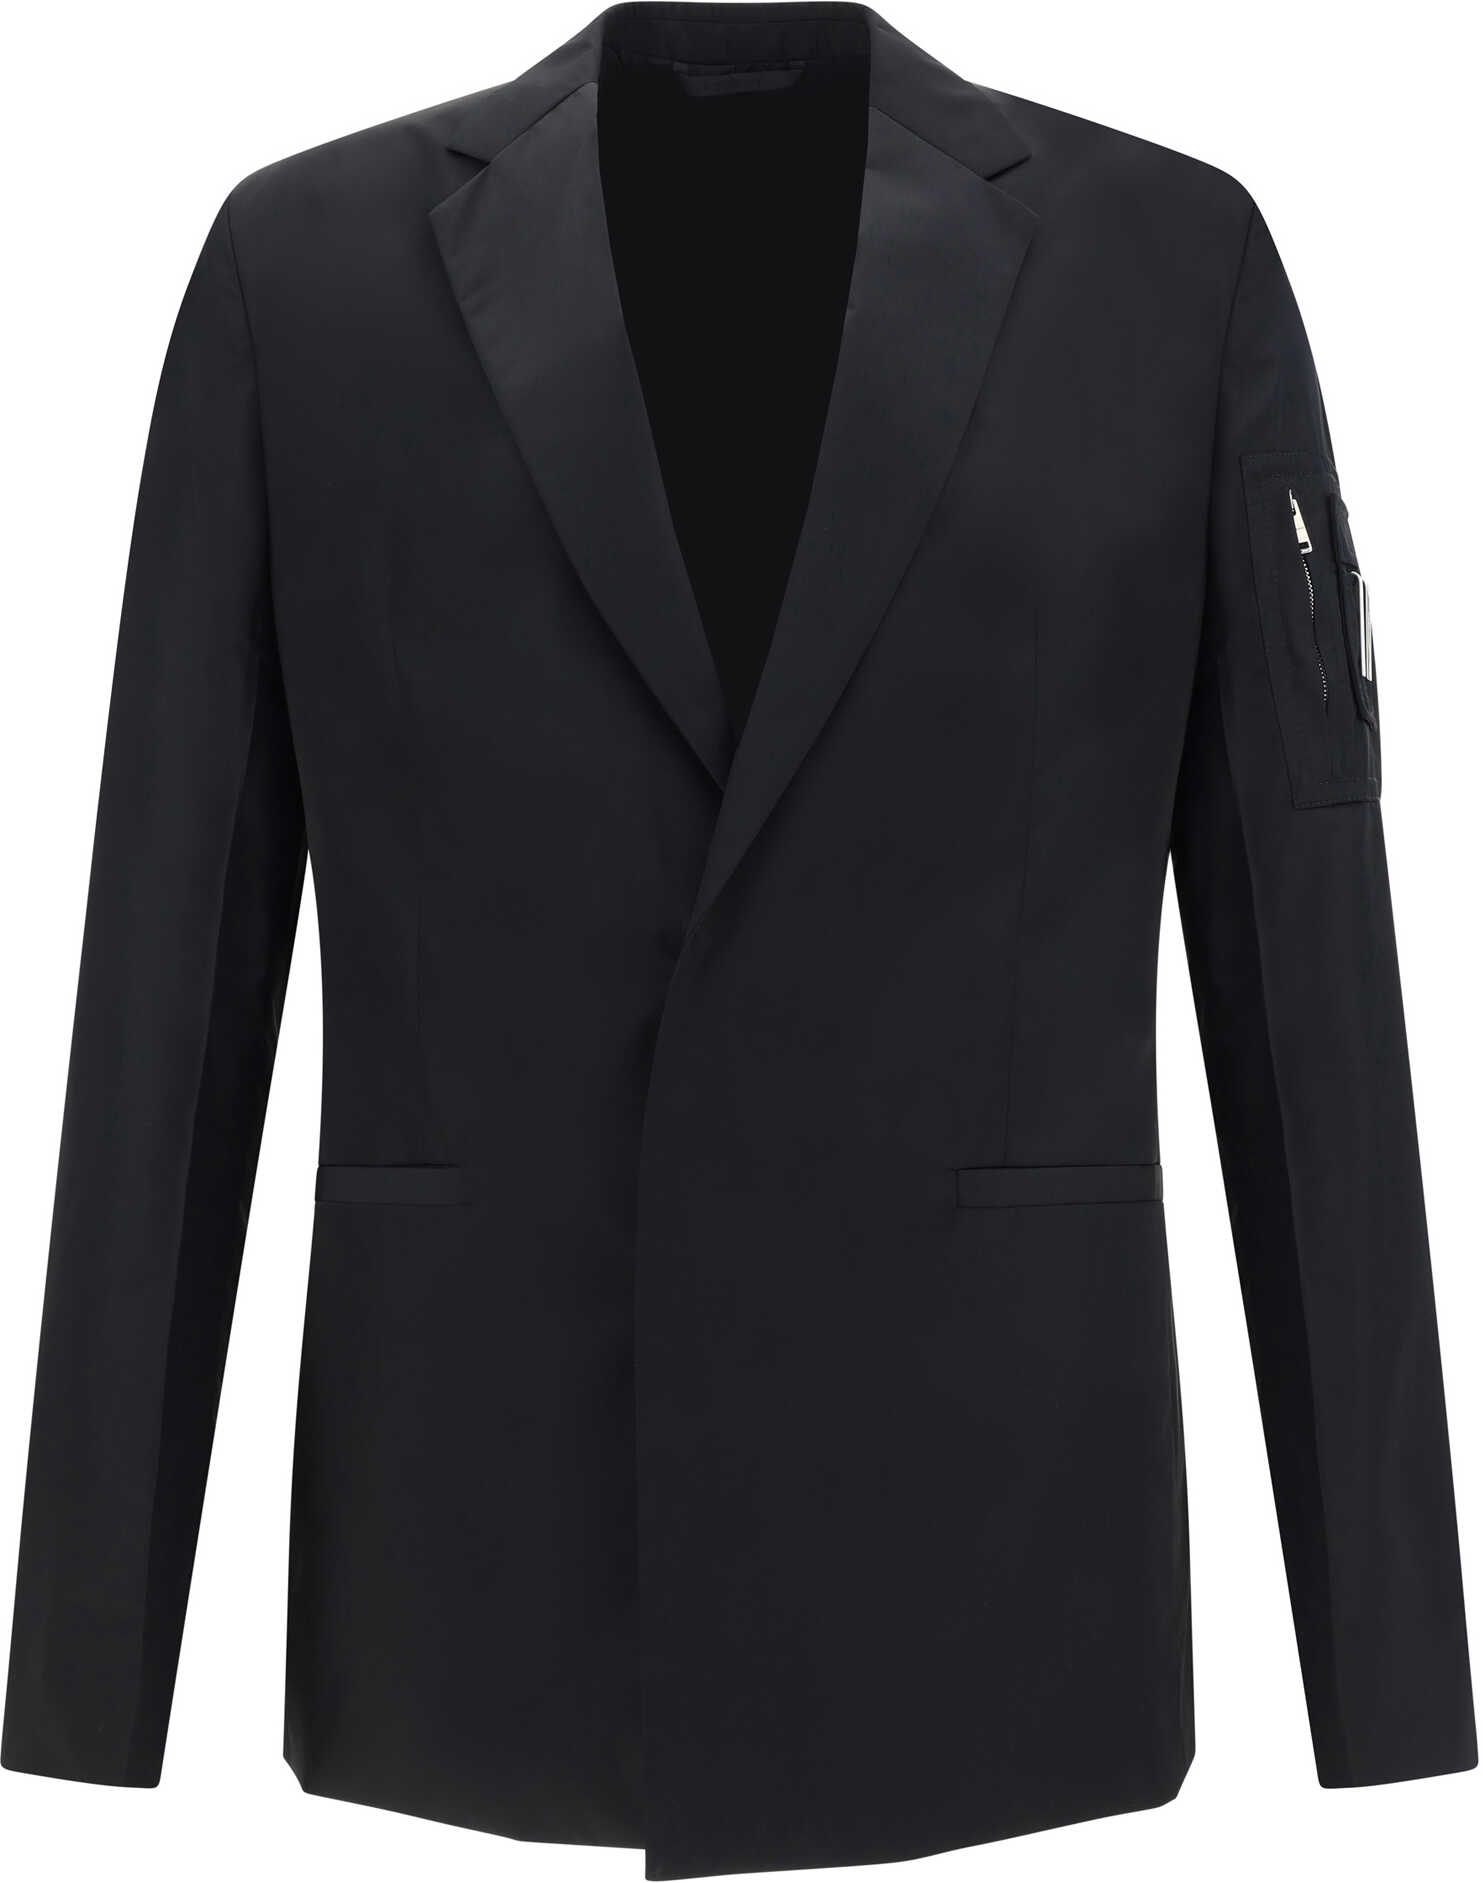 Givenchy Blazer Jacket BLACK b-mall.ro